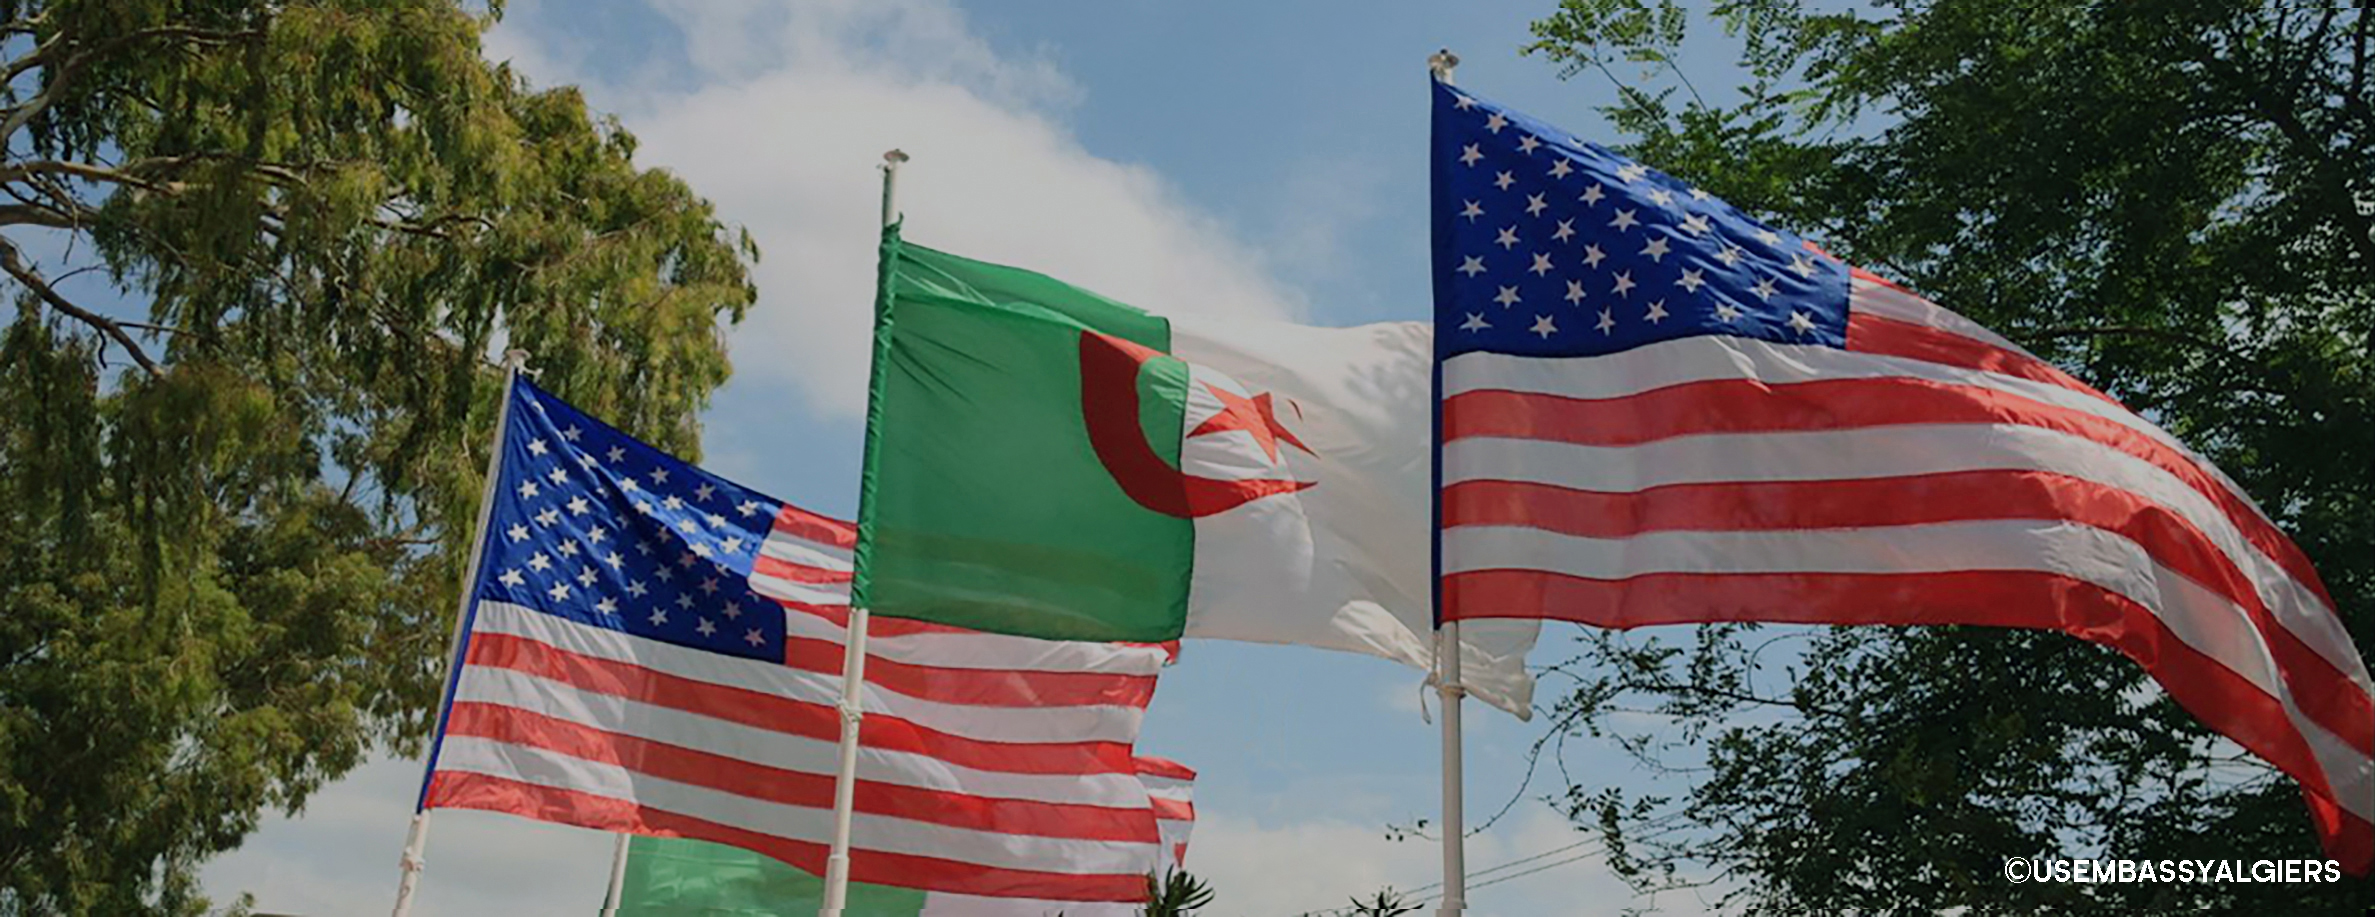 Hirak : les Etats-Unis expriment leur soutien au «droit du peuple algérien de manifester pacifiquement»